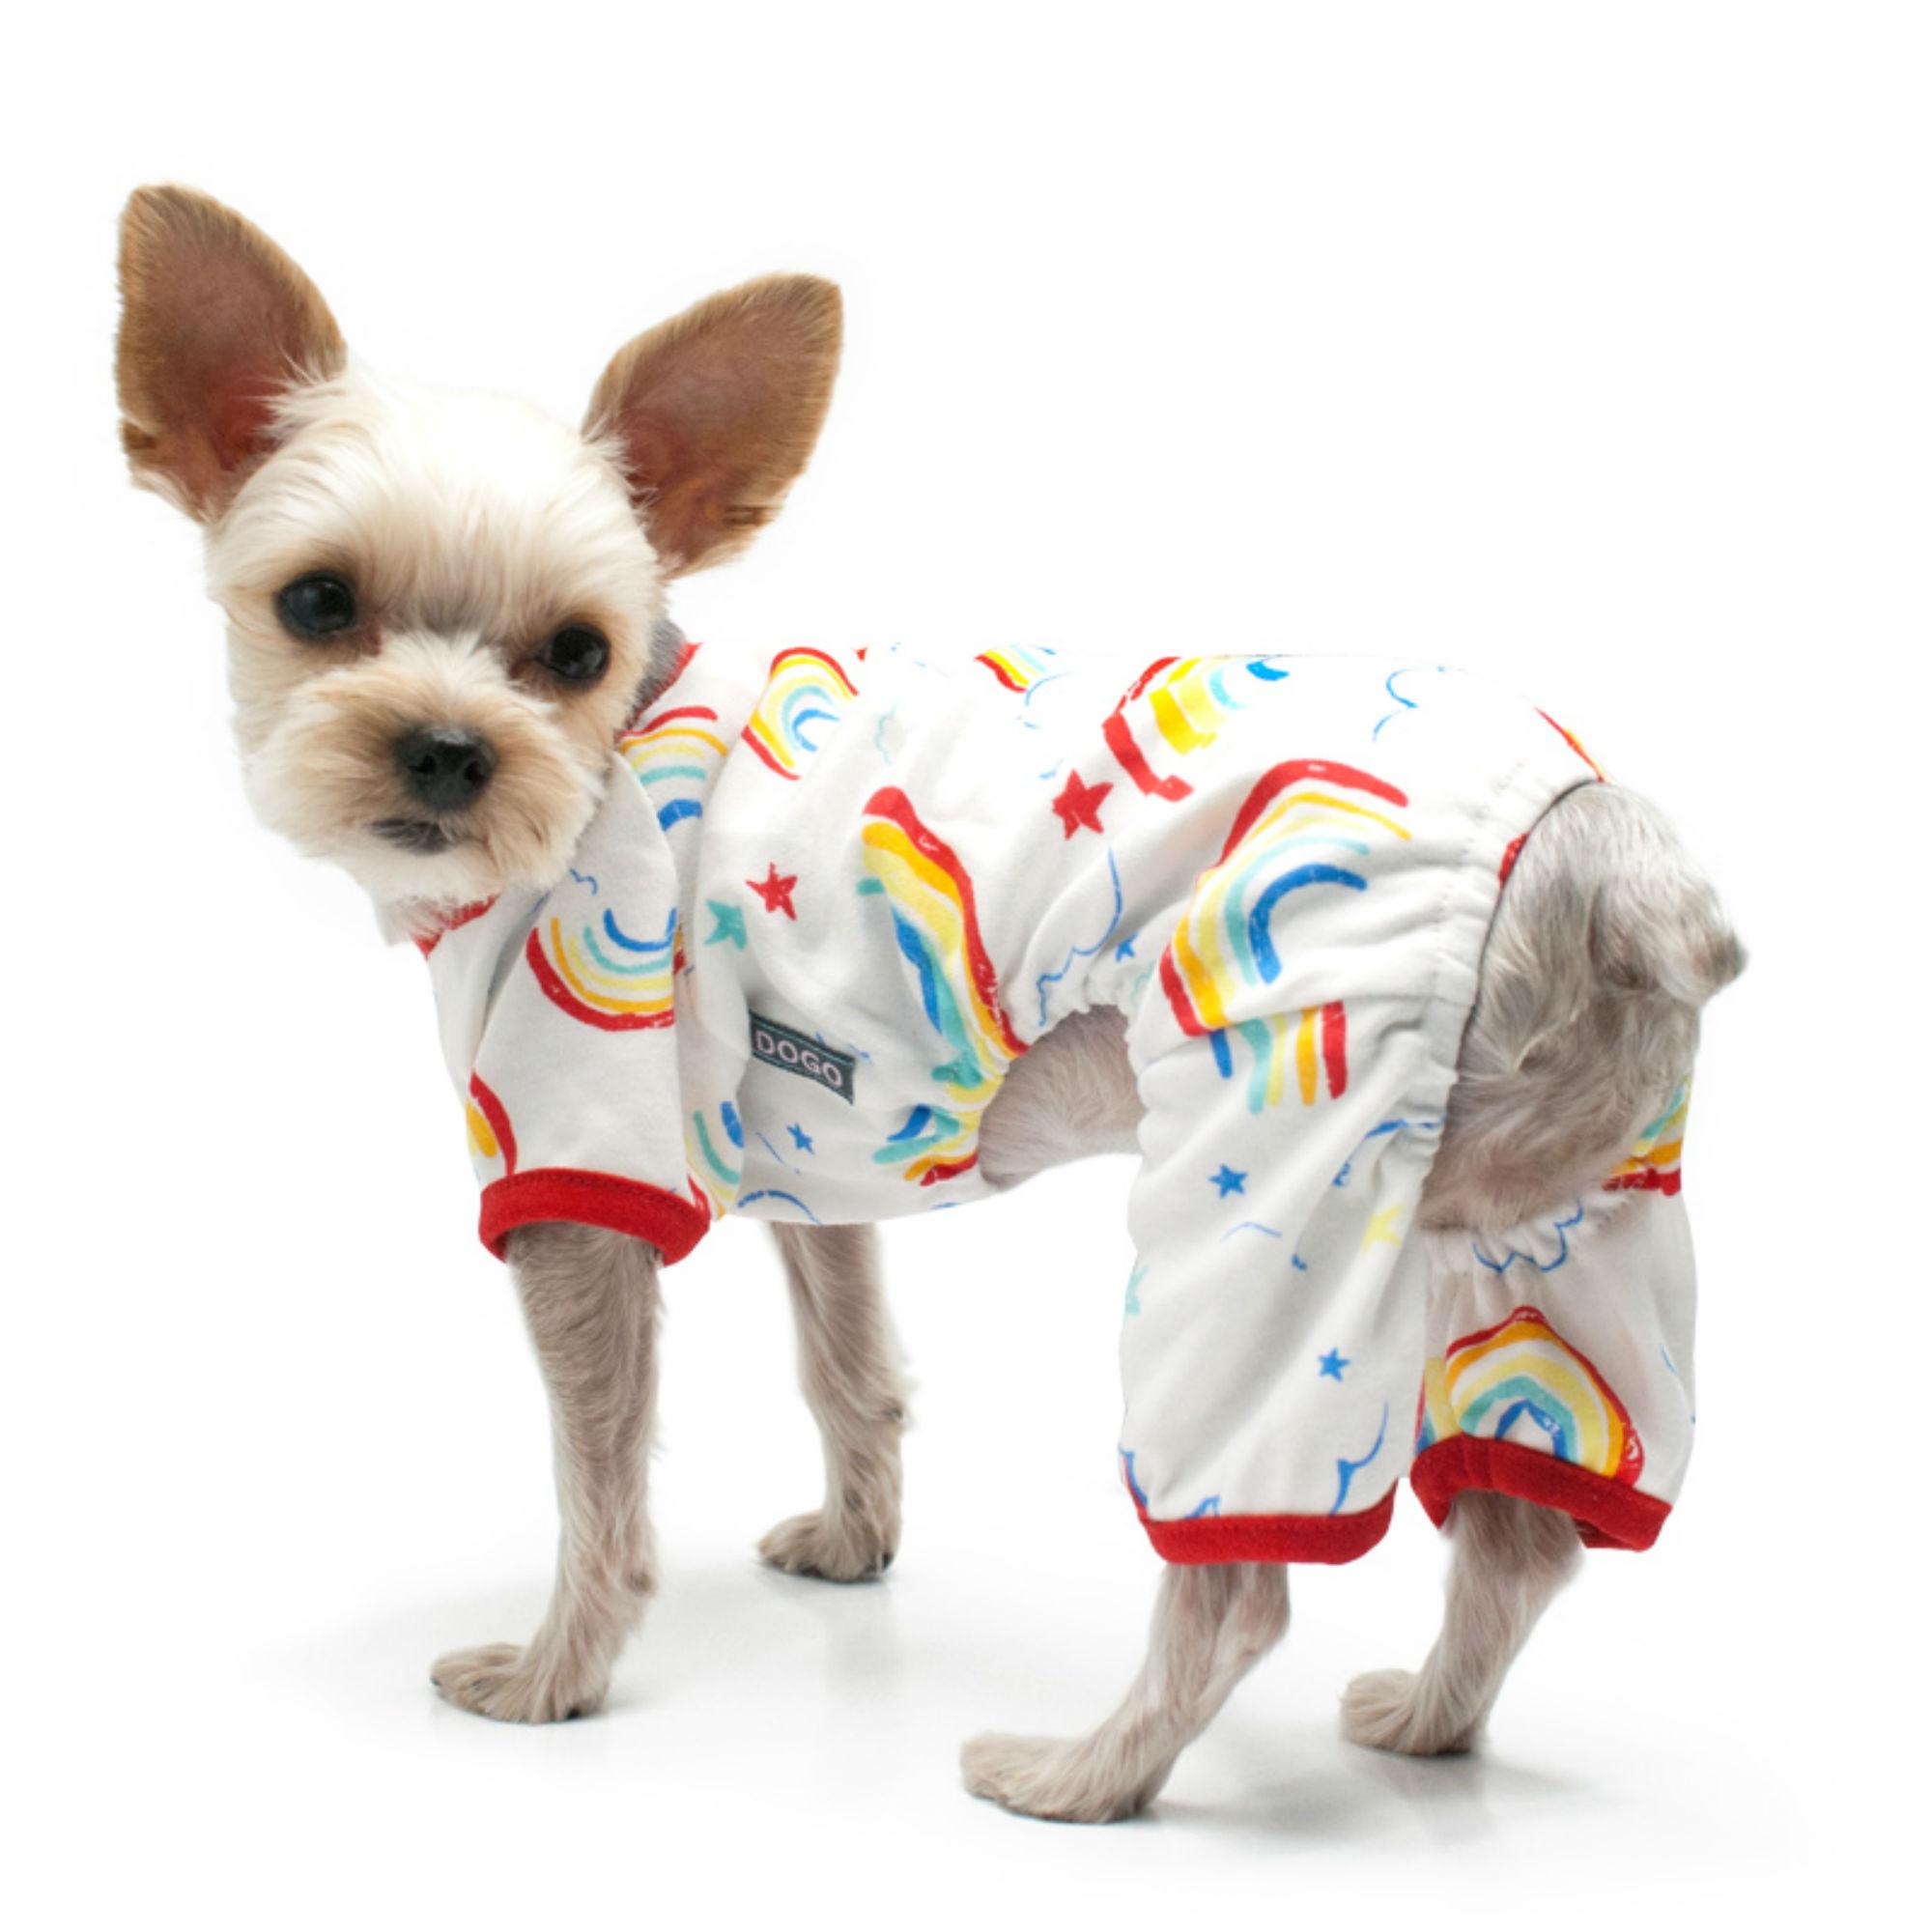 Rainbow Dog Pajamas by Dogo - Red